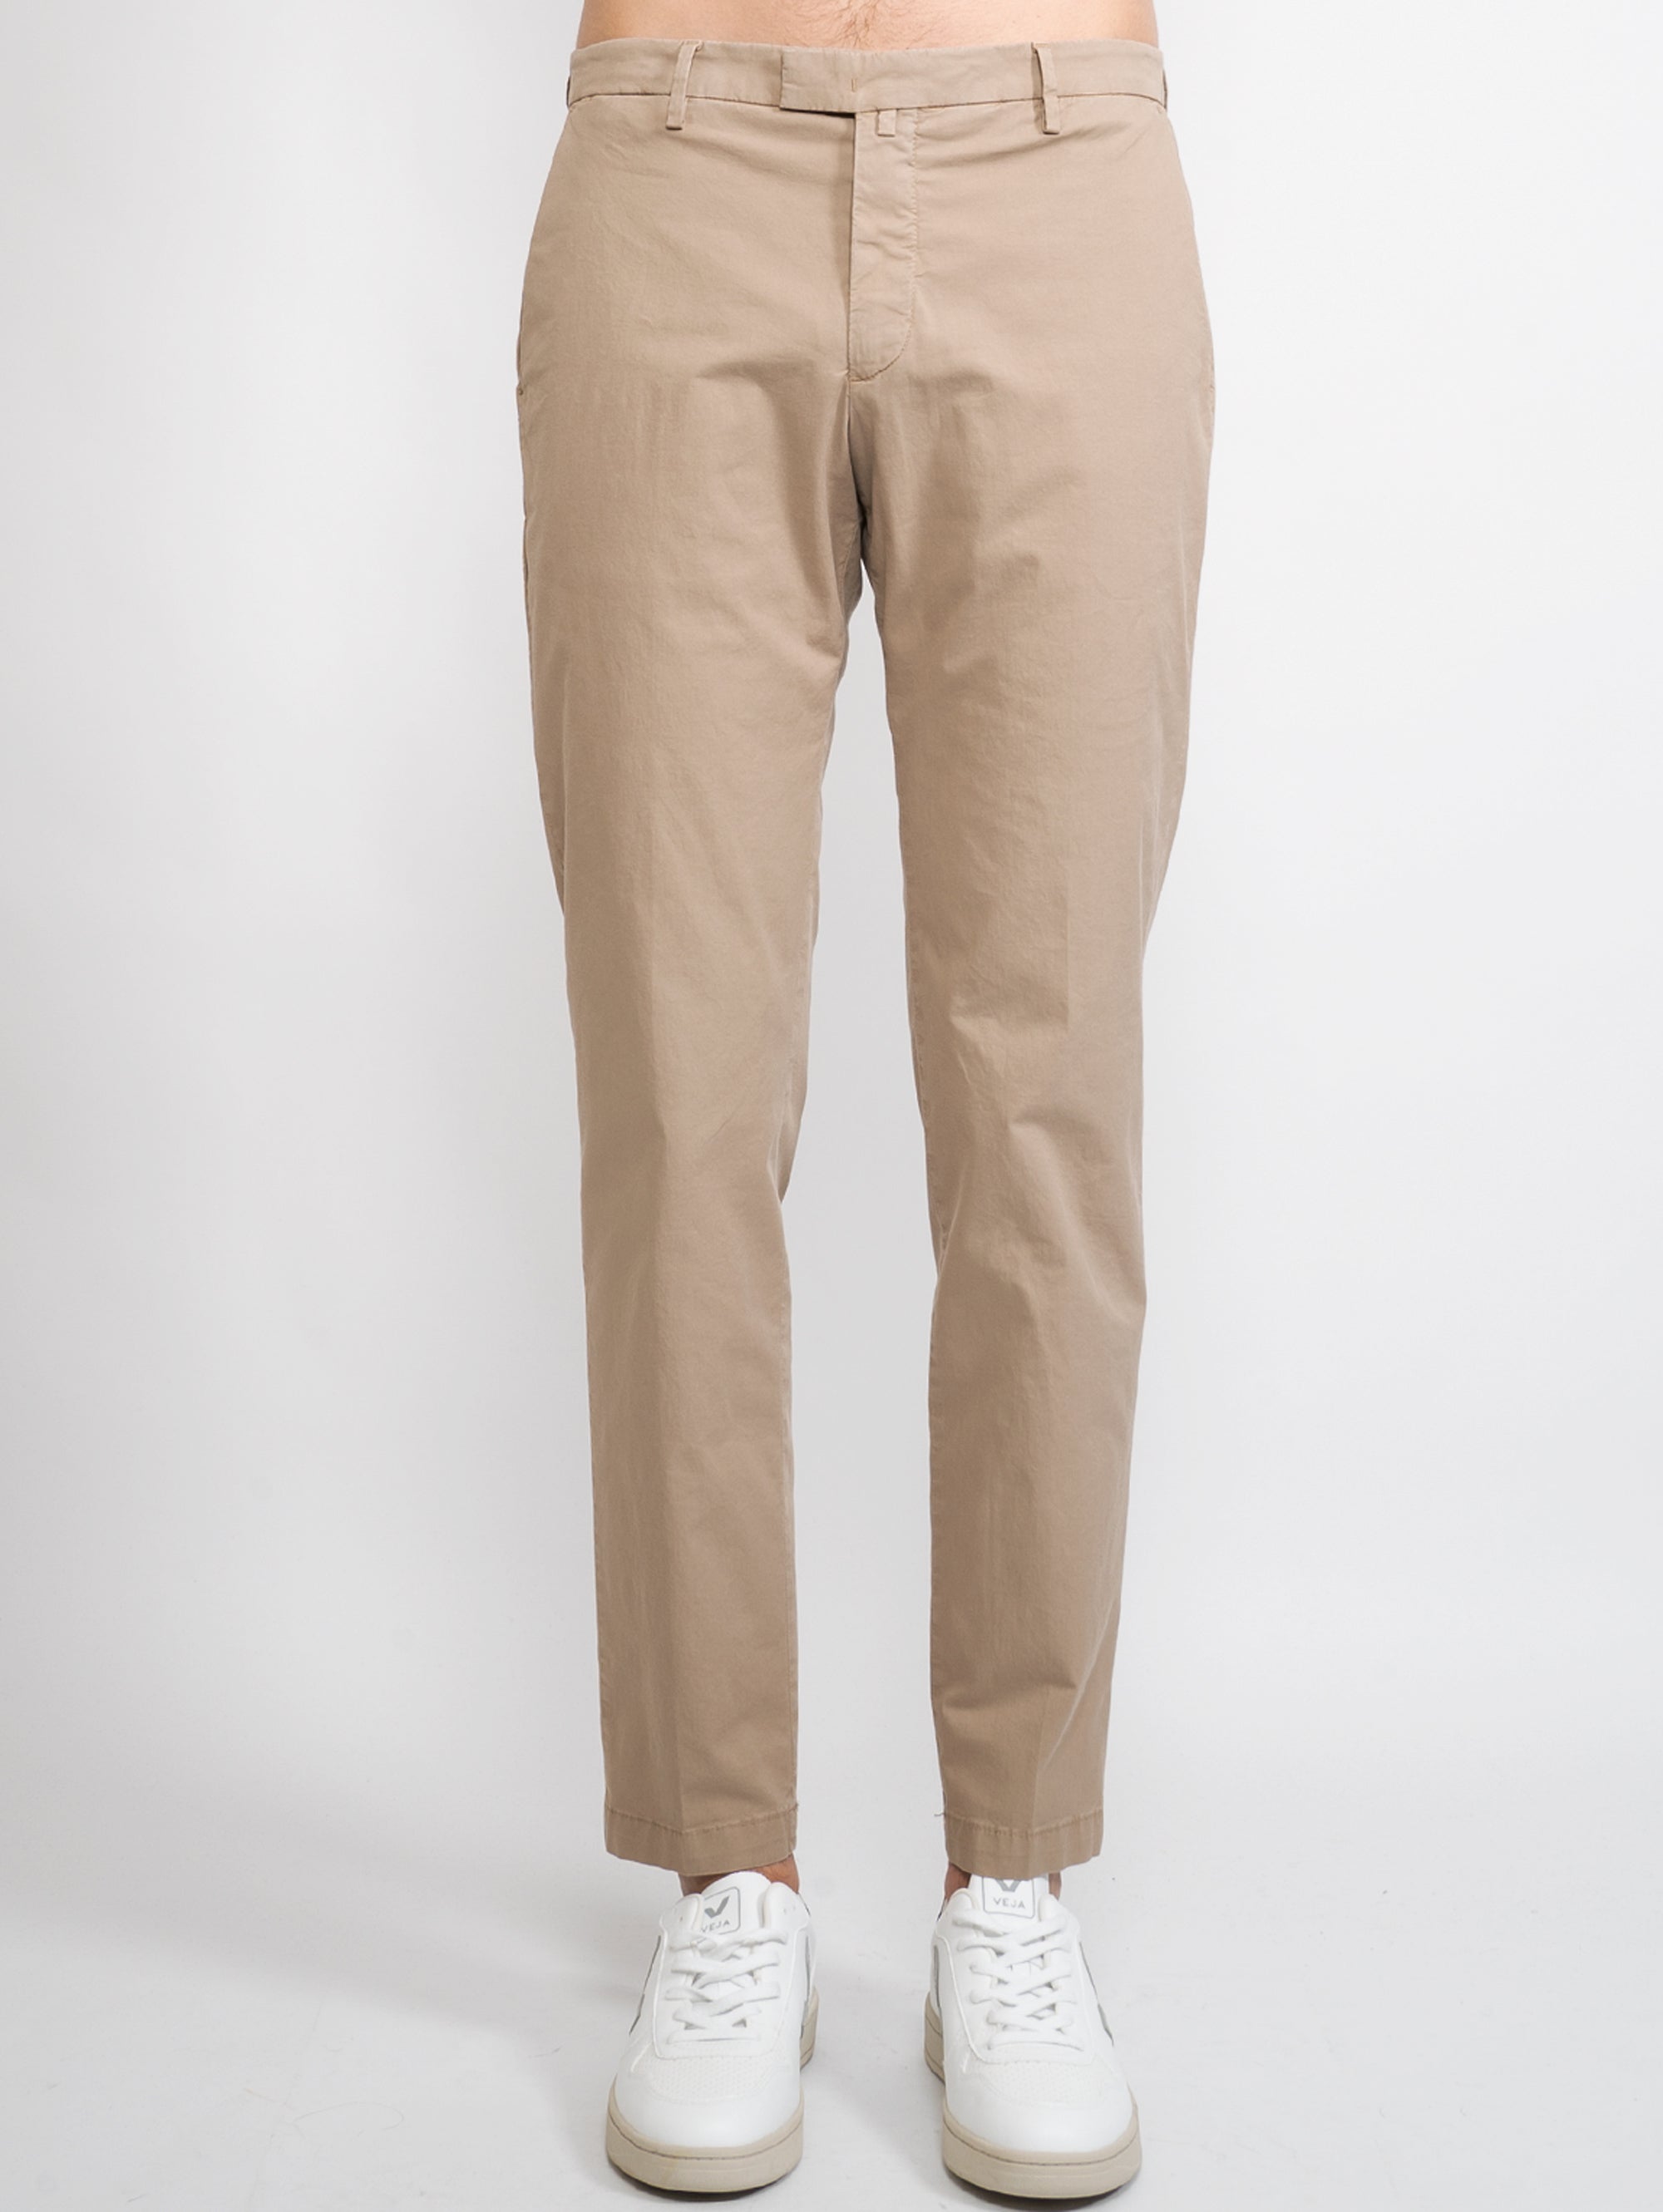 BRIGLIA 1949-Pantaloni in Jersey Marrone-TRYME Shop